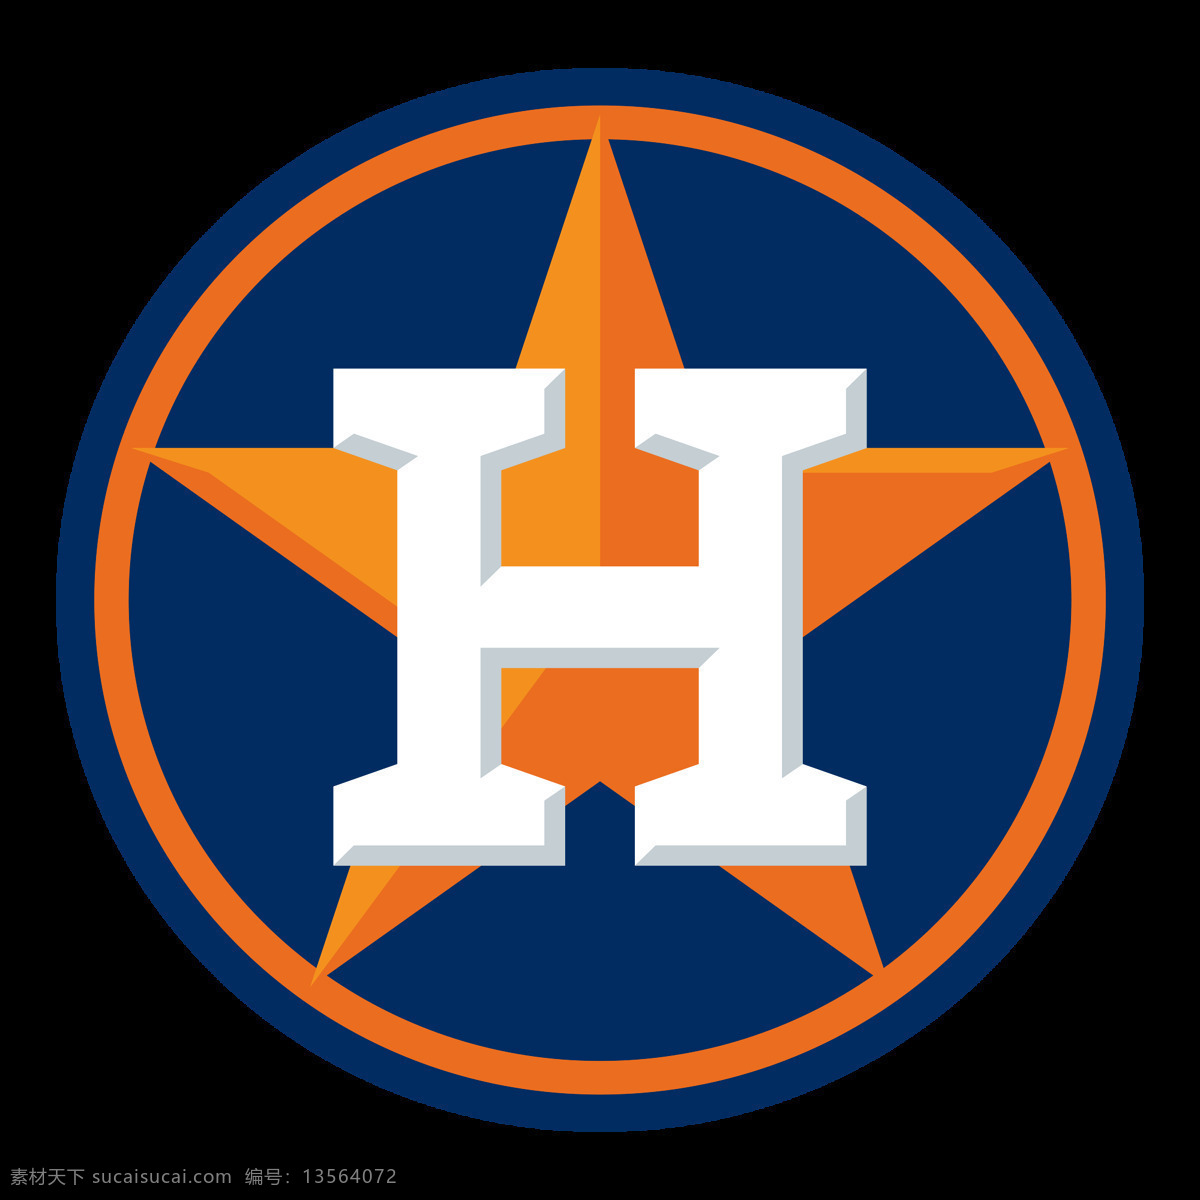 蓝色 圆形 休斯敦 太空人 俱乐部 标志 logo 棒球联盟 棒球俱乐部 棒球